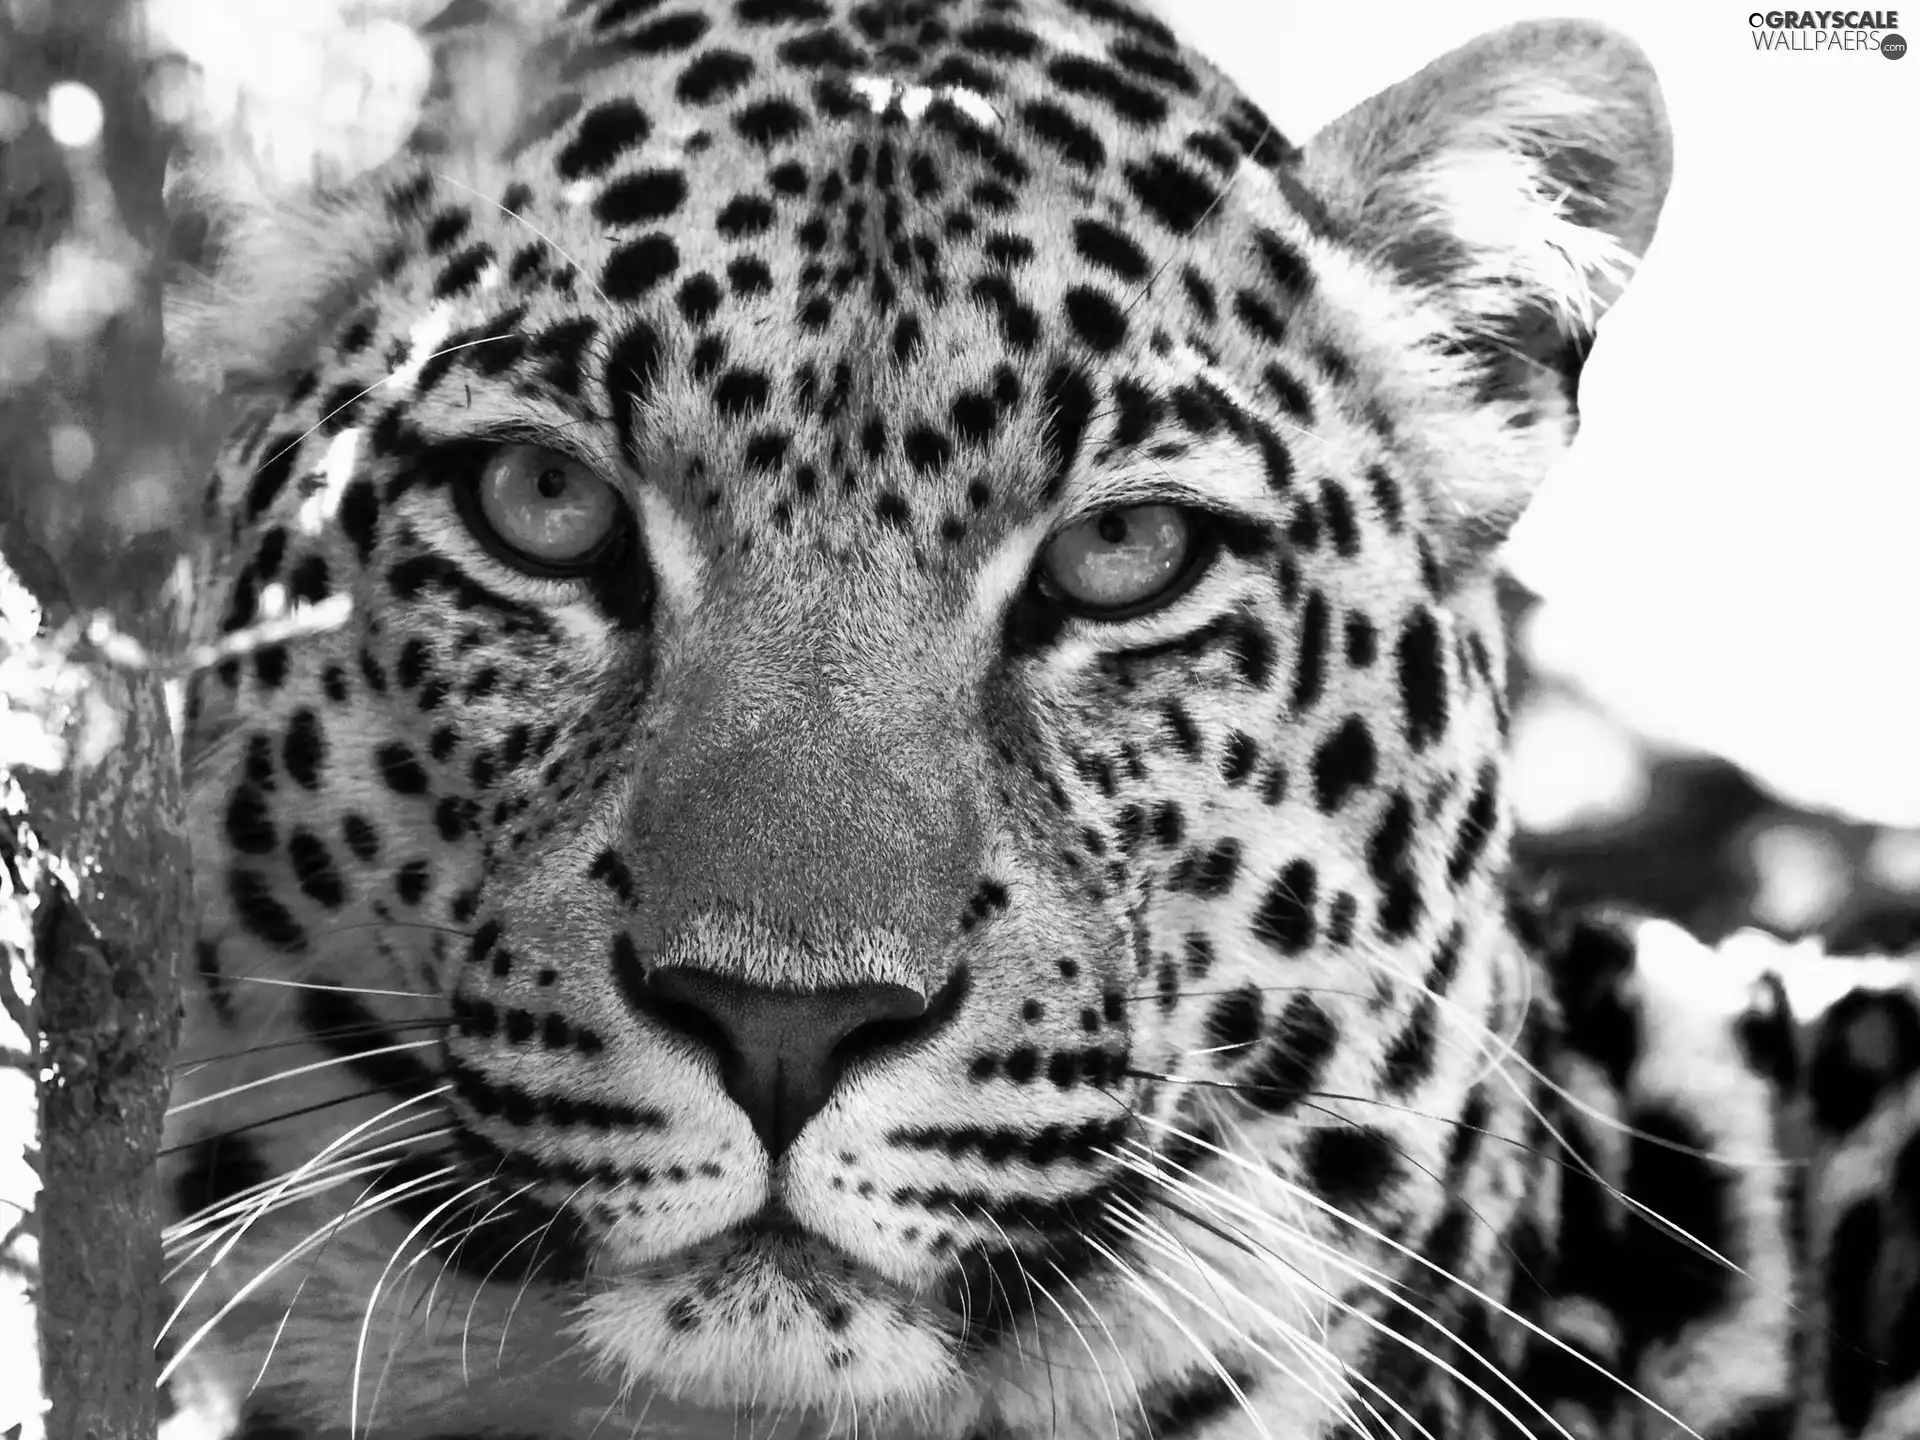 Leopards, spots